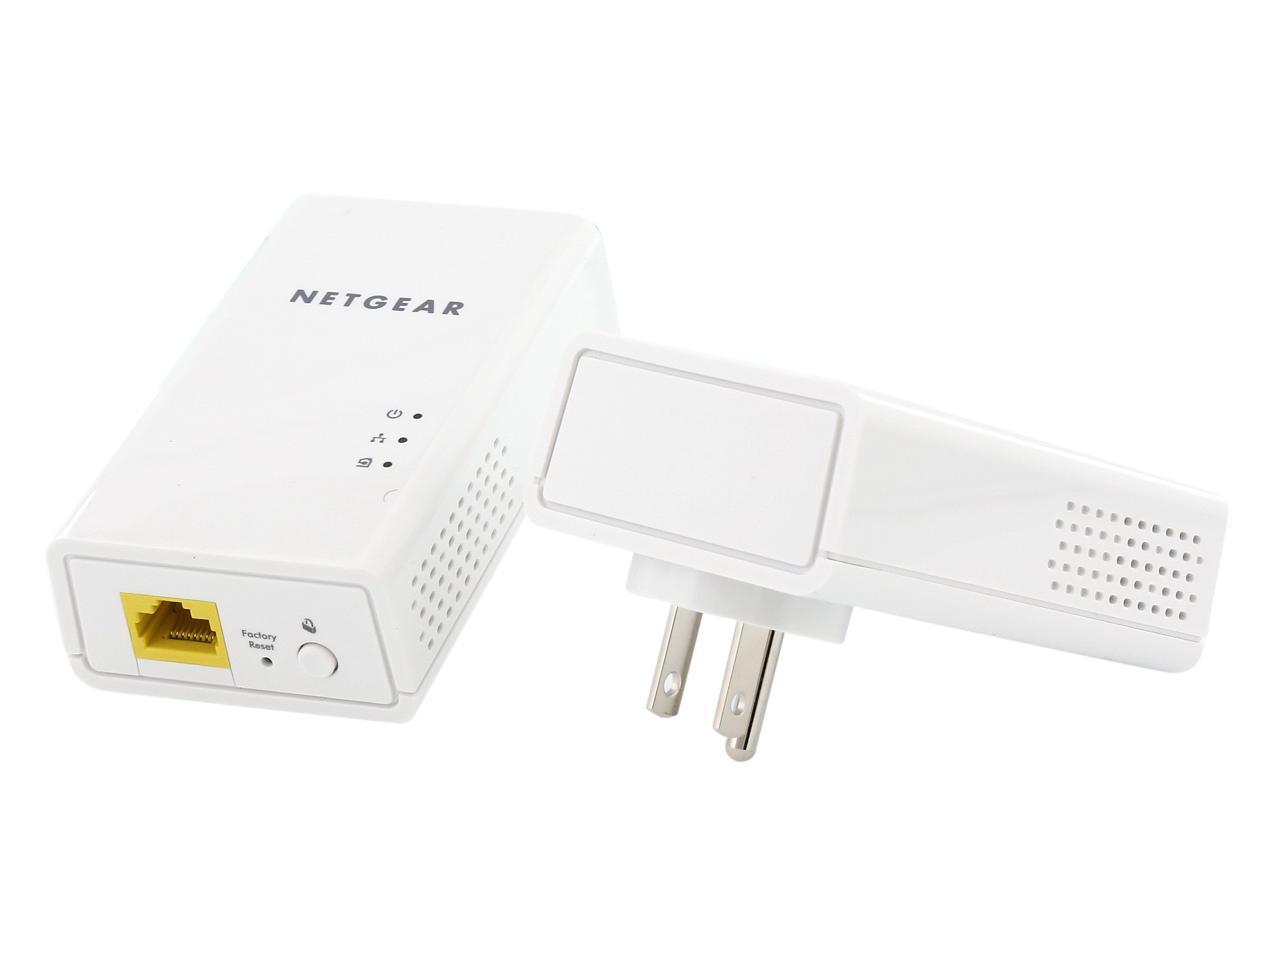 Netgear PL1200-100PAS Powerline 1200 Gigabit Ethernet Adapter Pair ZF4-326 2PCS 